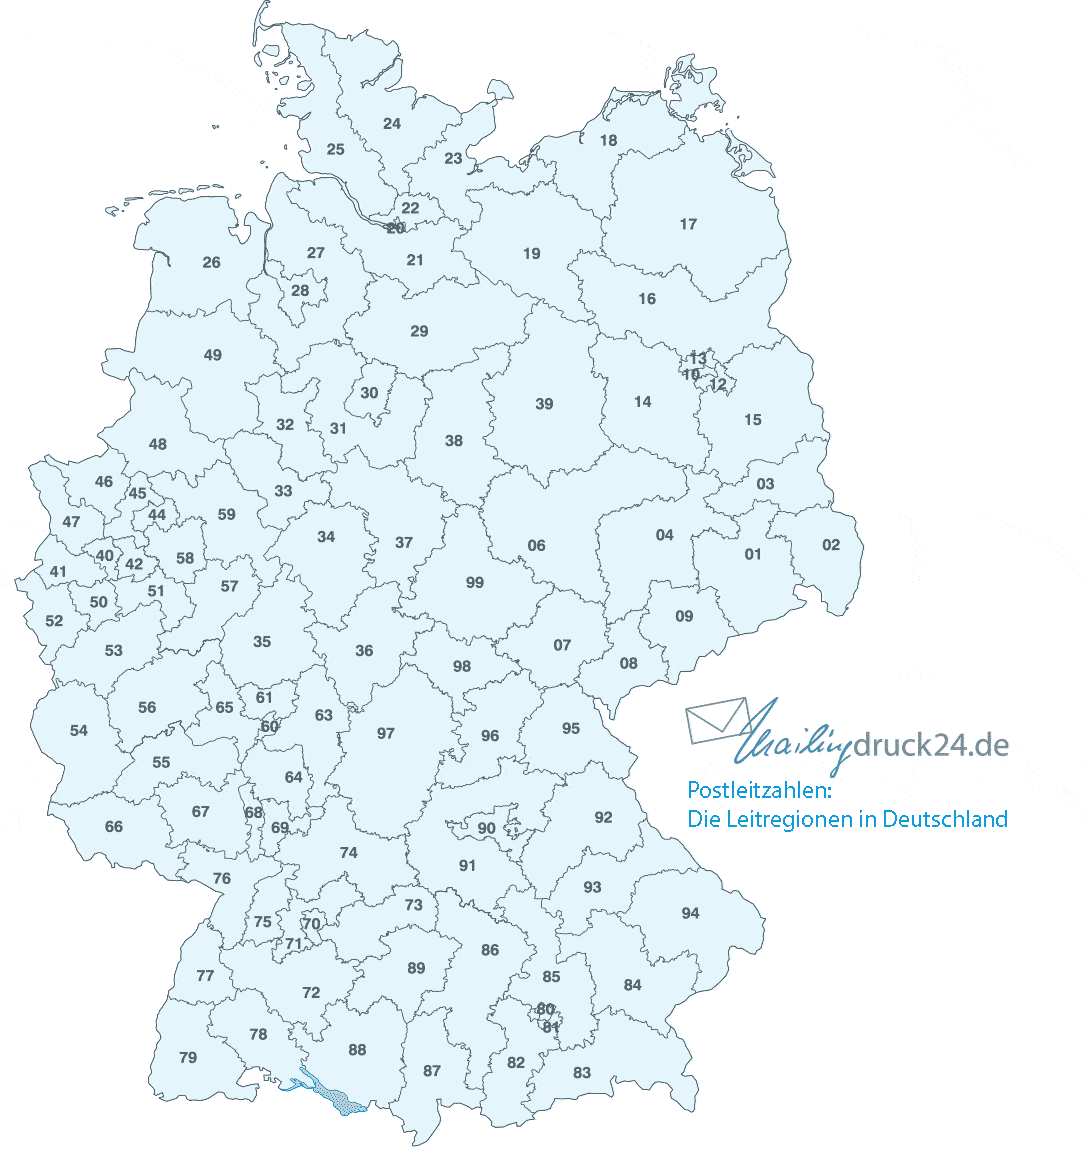 Diese Karte gibt einen Überblick über die Leitregionen in Deutschland